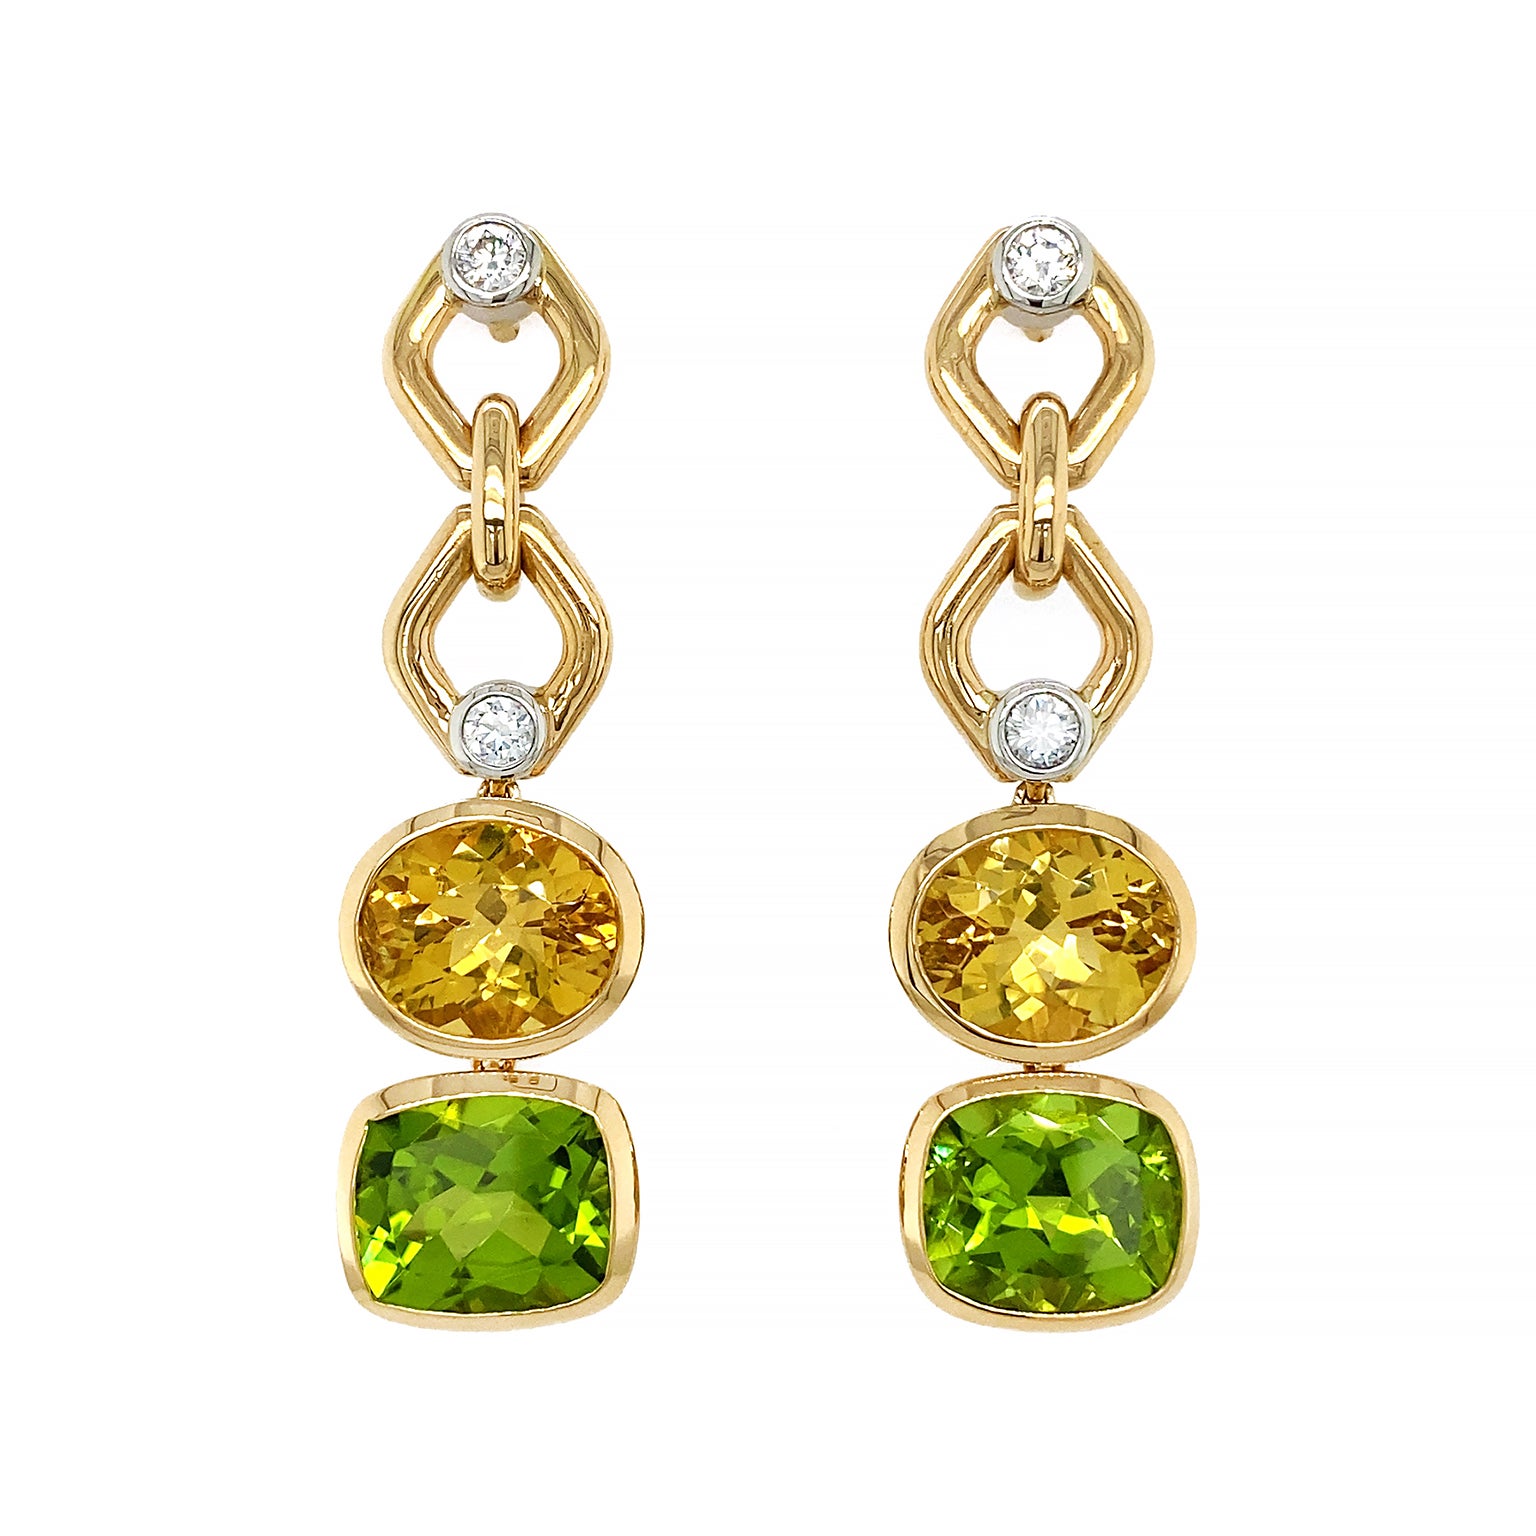 Boucles d'oreilles pendantes en or jaune 18 carats, béryl jaune, péridot et diamants